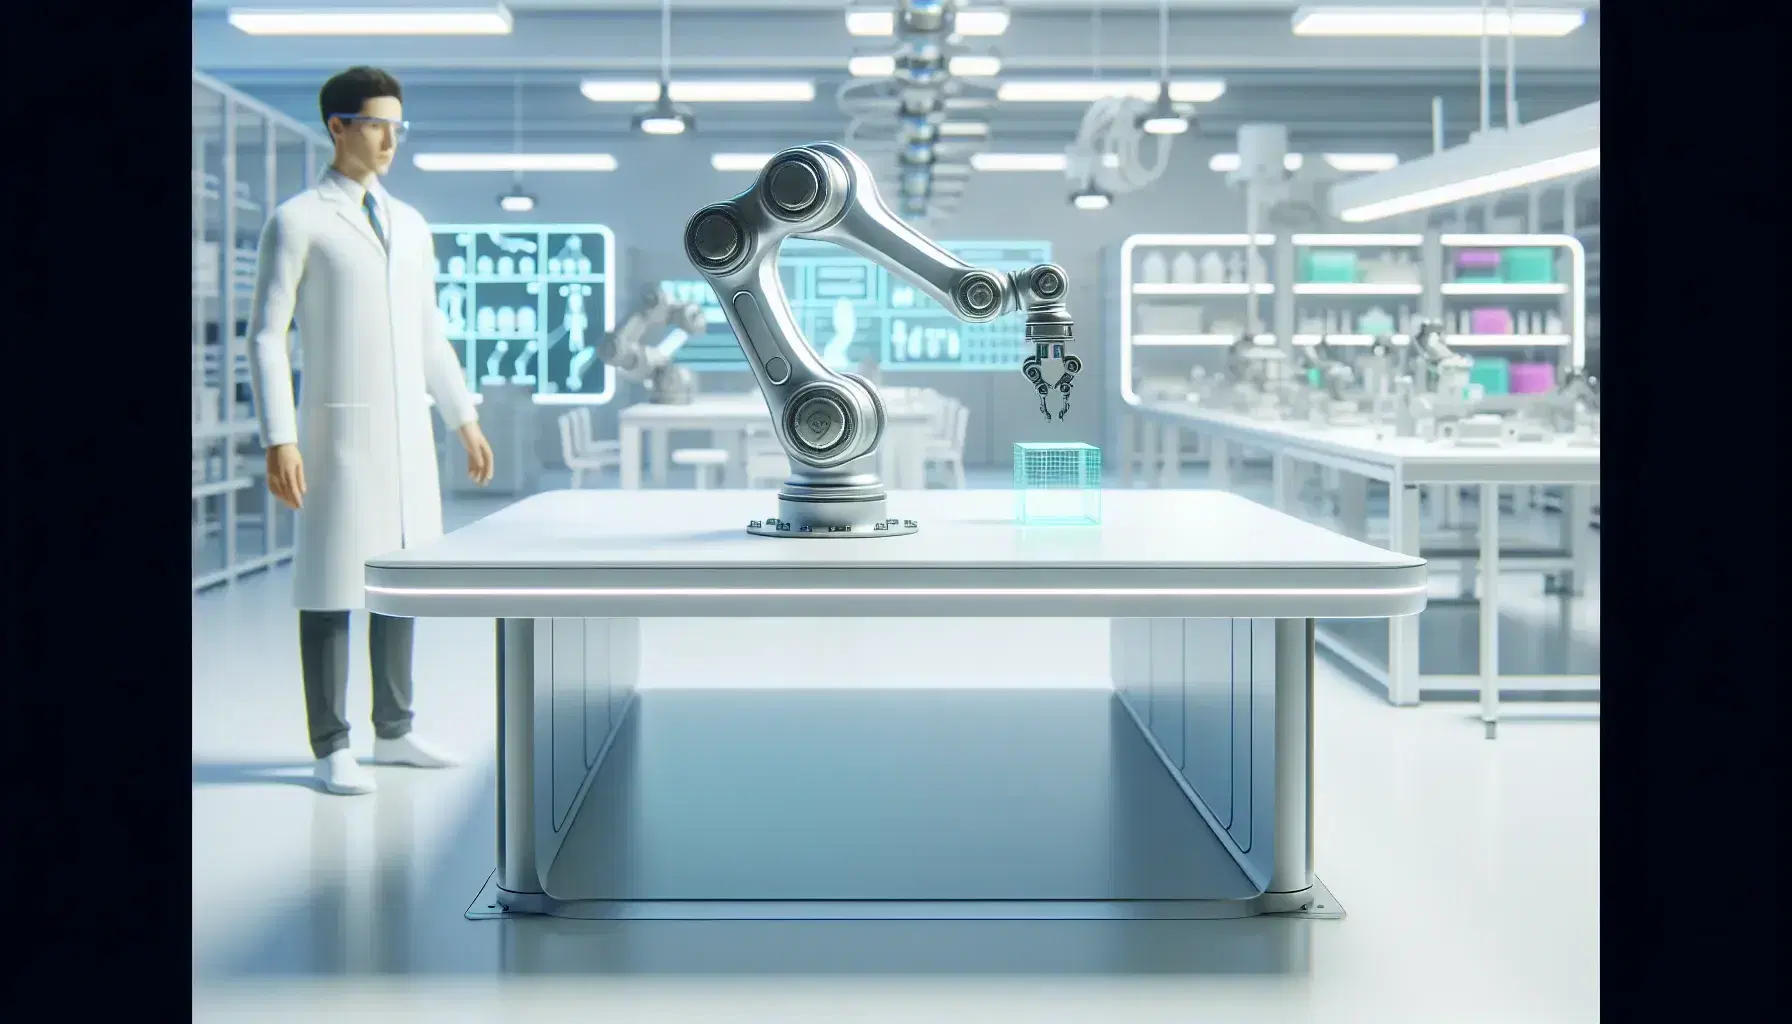 Laboratorio tecnológico moderno con brazo robótico articulado manipulando un objeto cúbico verde claro, y un investigador observando el proceso.